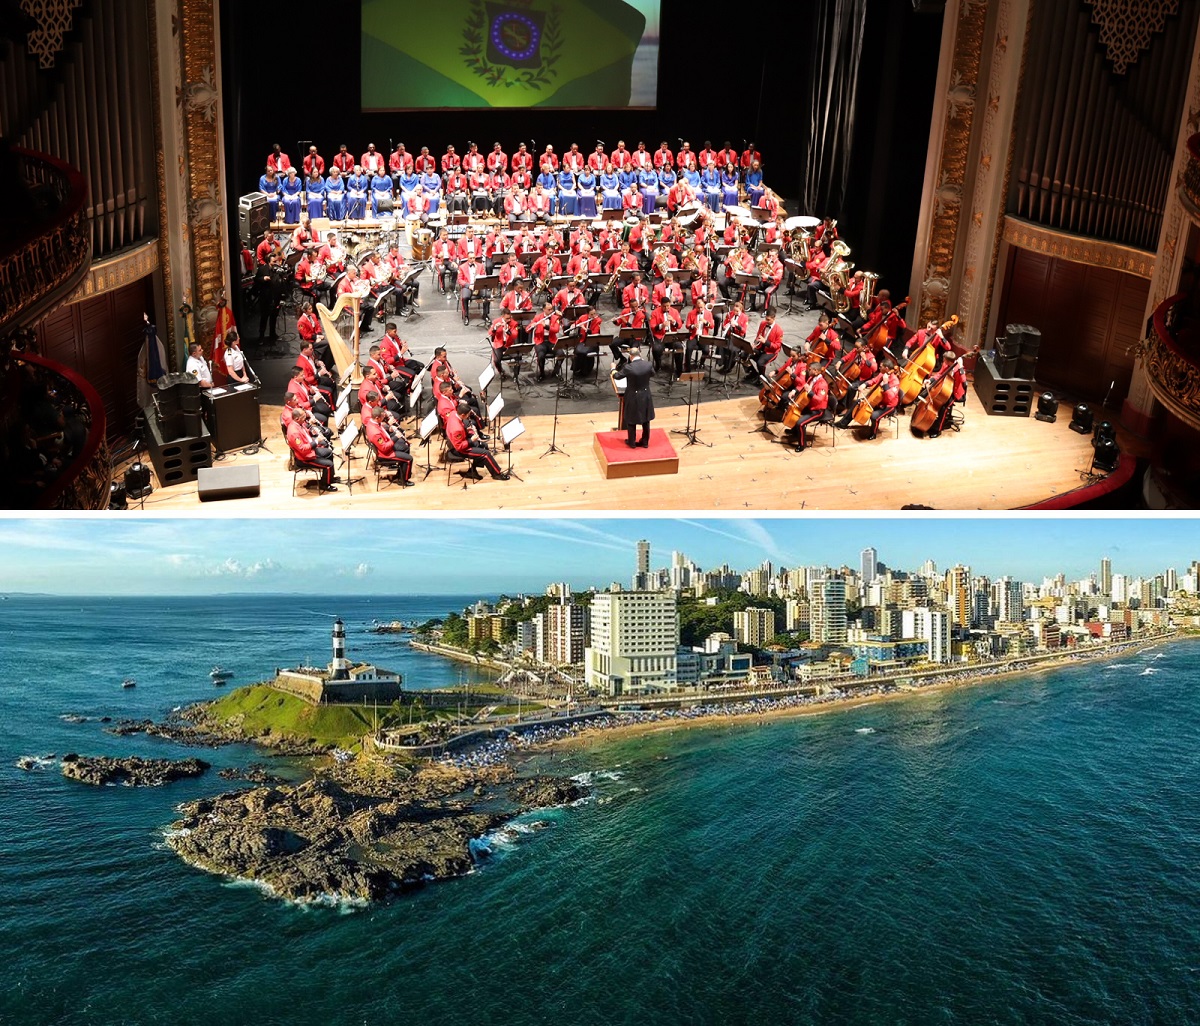 Exclusivo: Sinfônica da Marinha com 120 músicos fará apresentação inédita no Farol da Barra